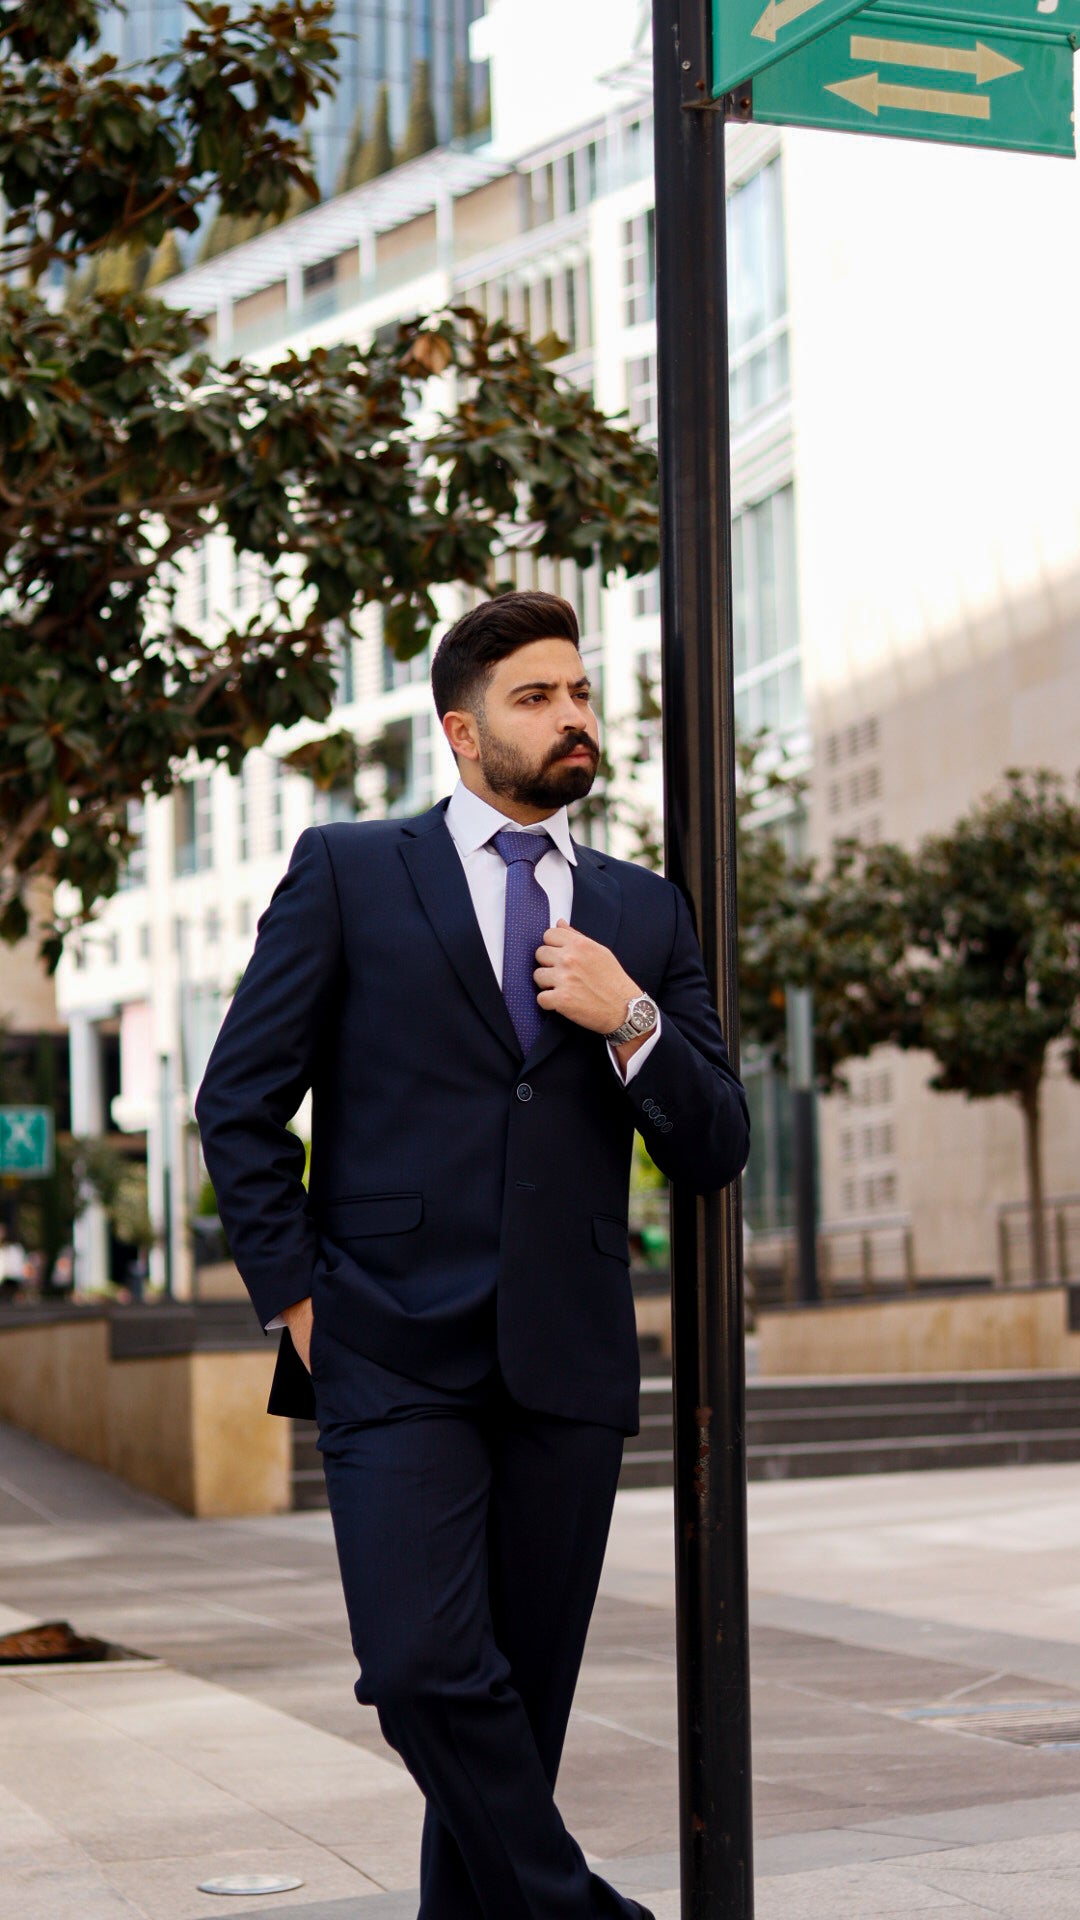 Wallstreet Suit - High Quality Men's Suit